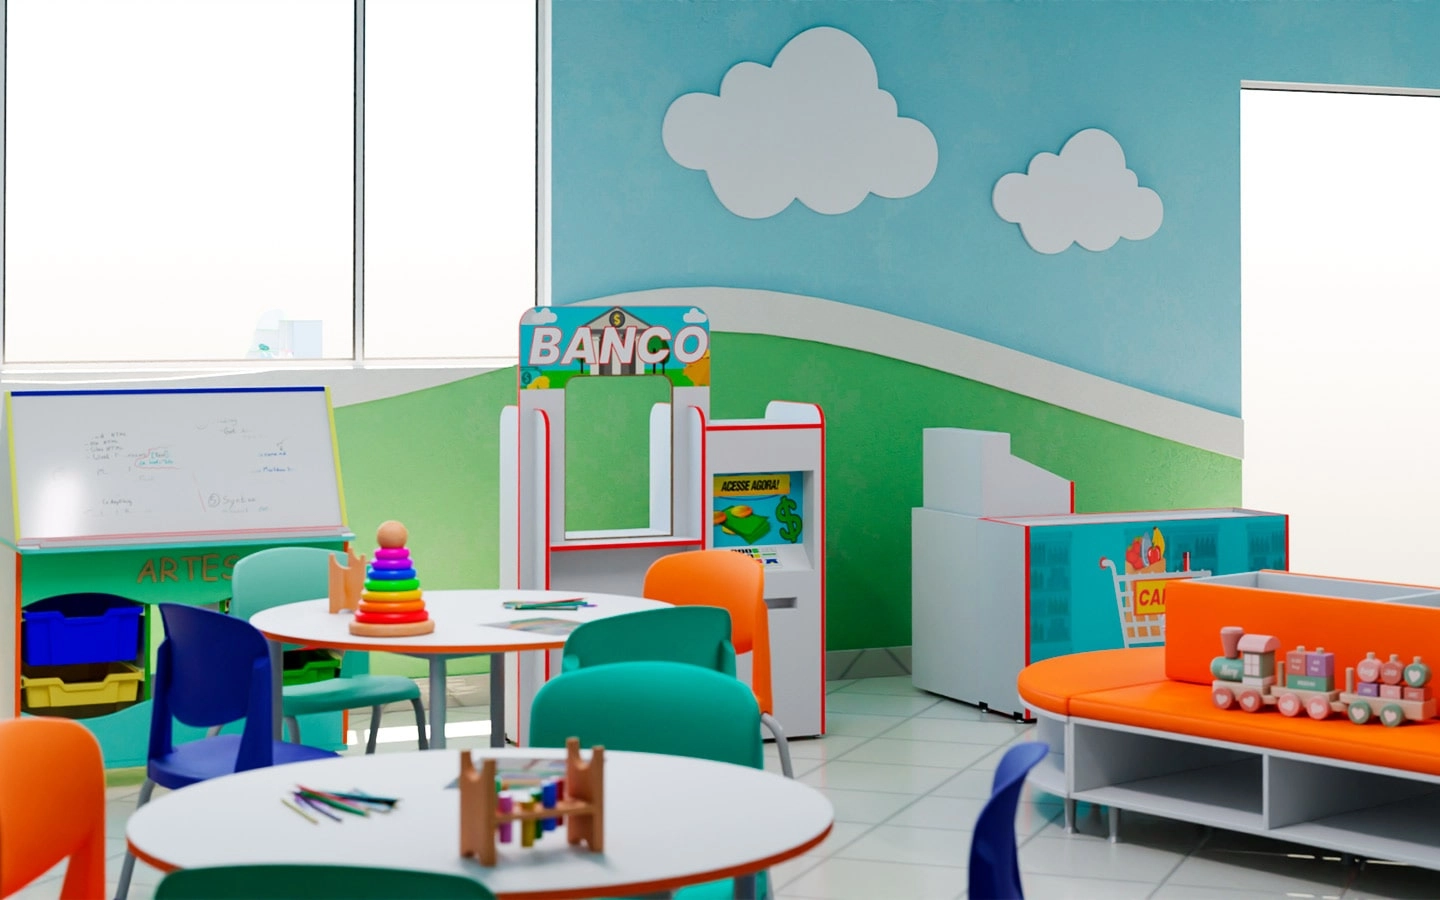 uploads/Parte de sala de aula infantil com diversos armários com brinquedos e algumas mesas redondas com cadeiras - além de pinturas de nuvens nas paredes azuis.